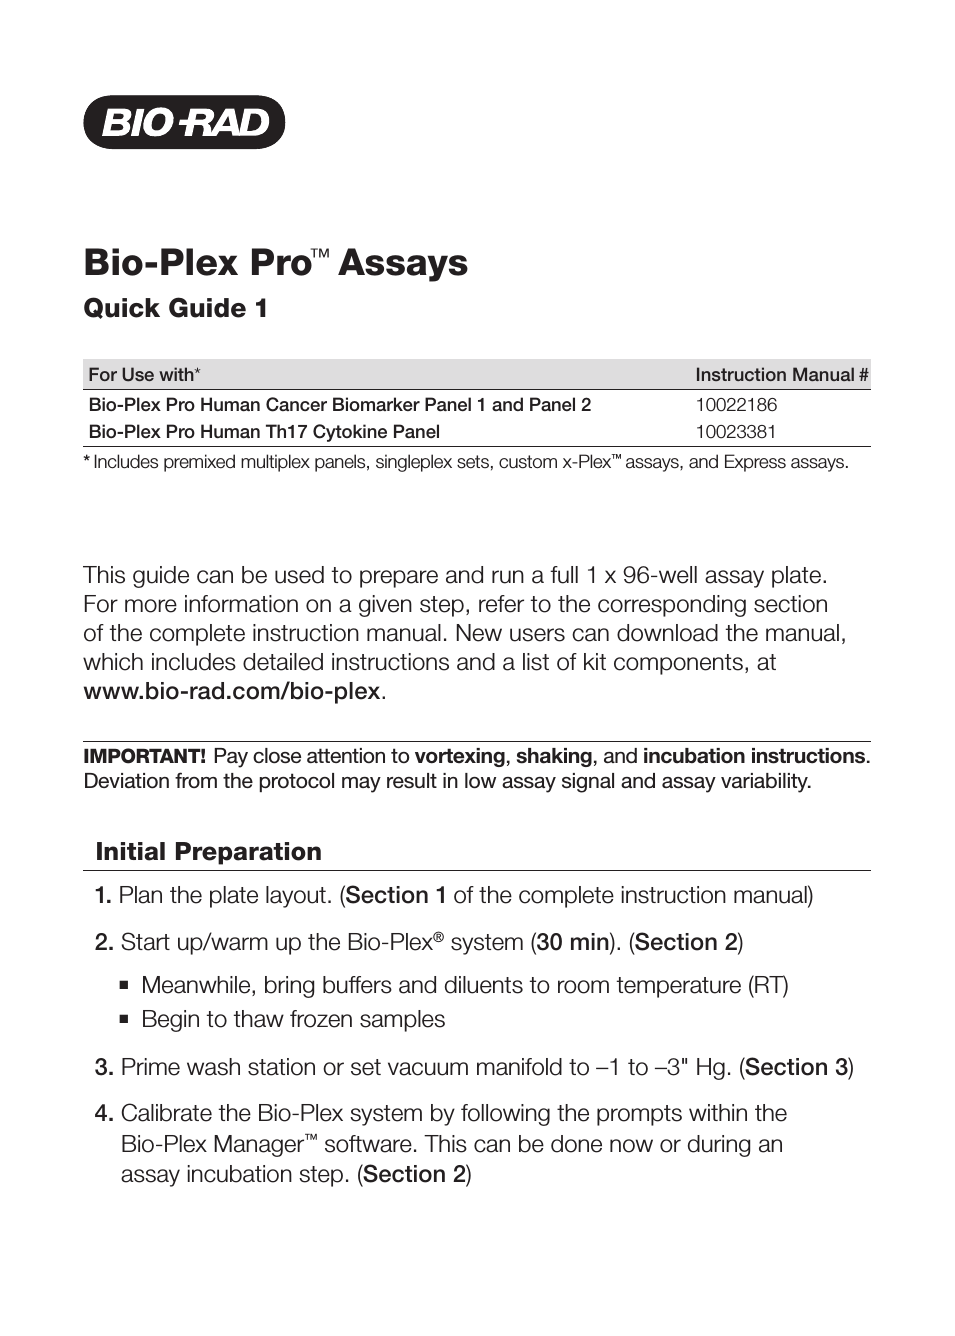 Bio-Plex Pro™ Human Cancer Biomarker Assays